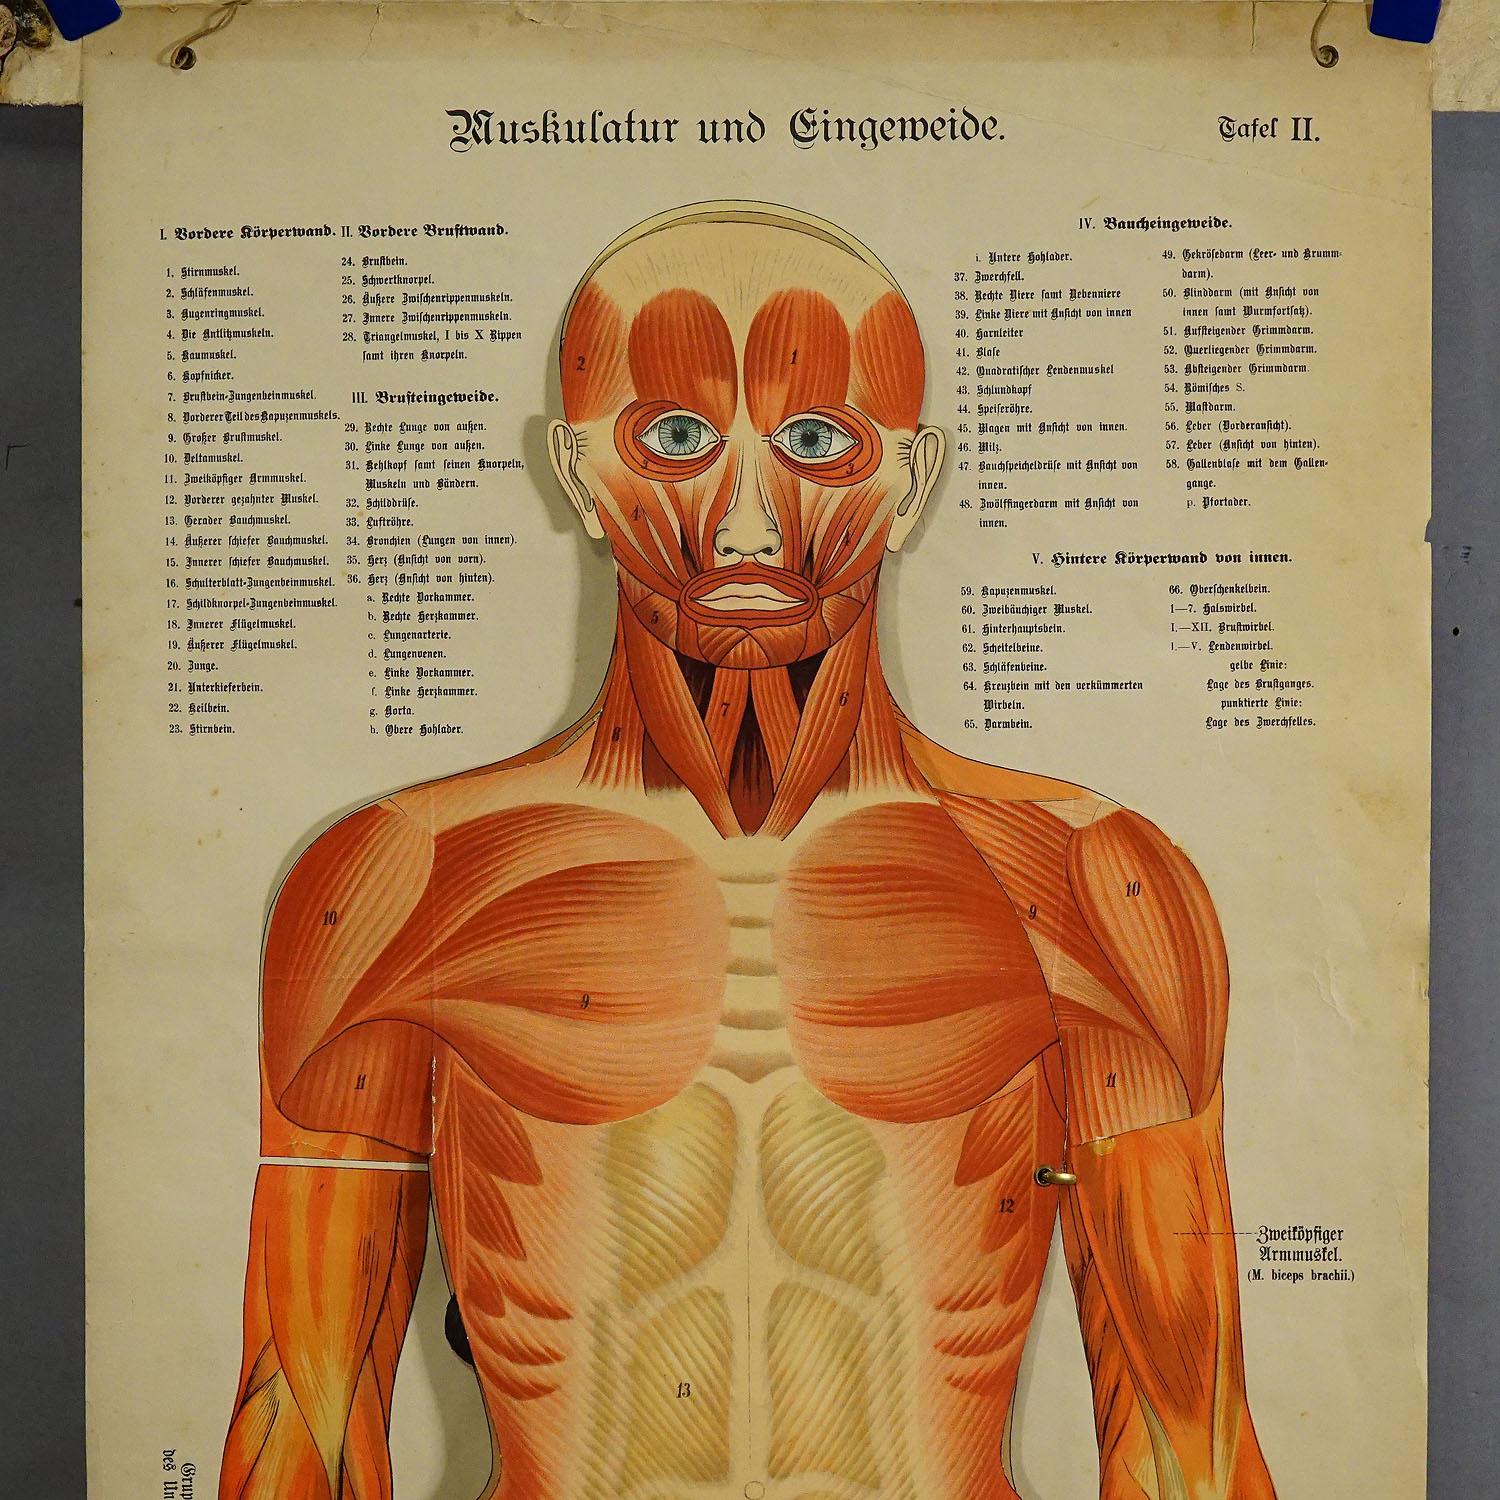 Rare planche murale anatomique du 19e siècle représentant la musculature humaine et les organes internes. Avec des organes humains multicolores amovibles comme les poumons, le cœur, le foie, les reins, etc. En pliant les multiples couches, la